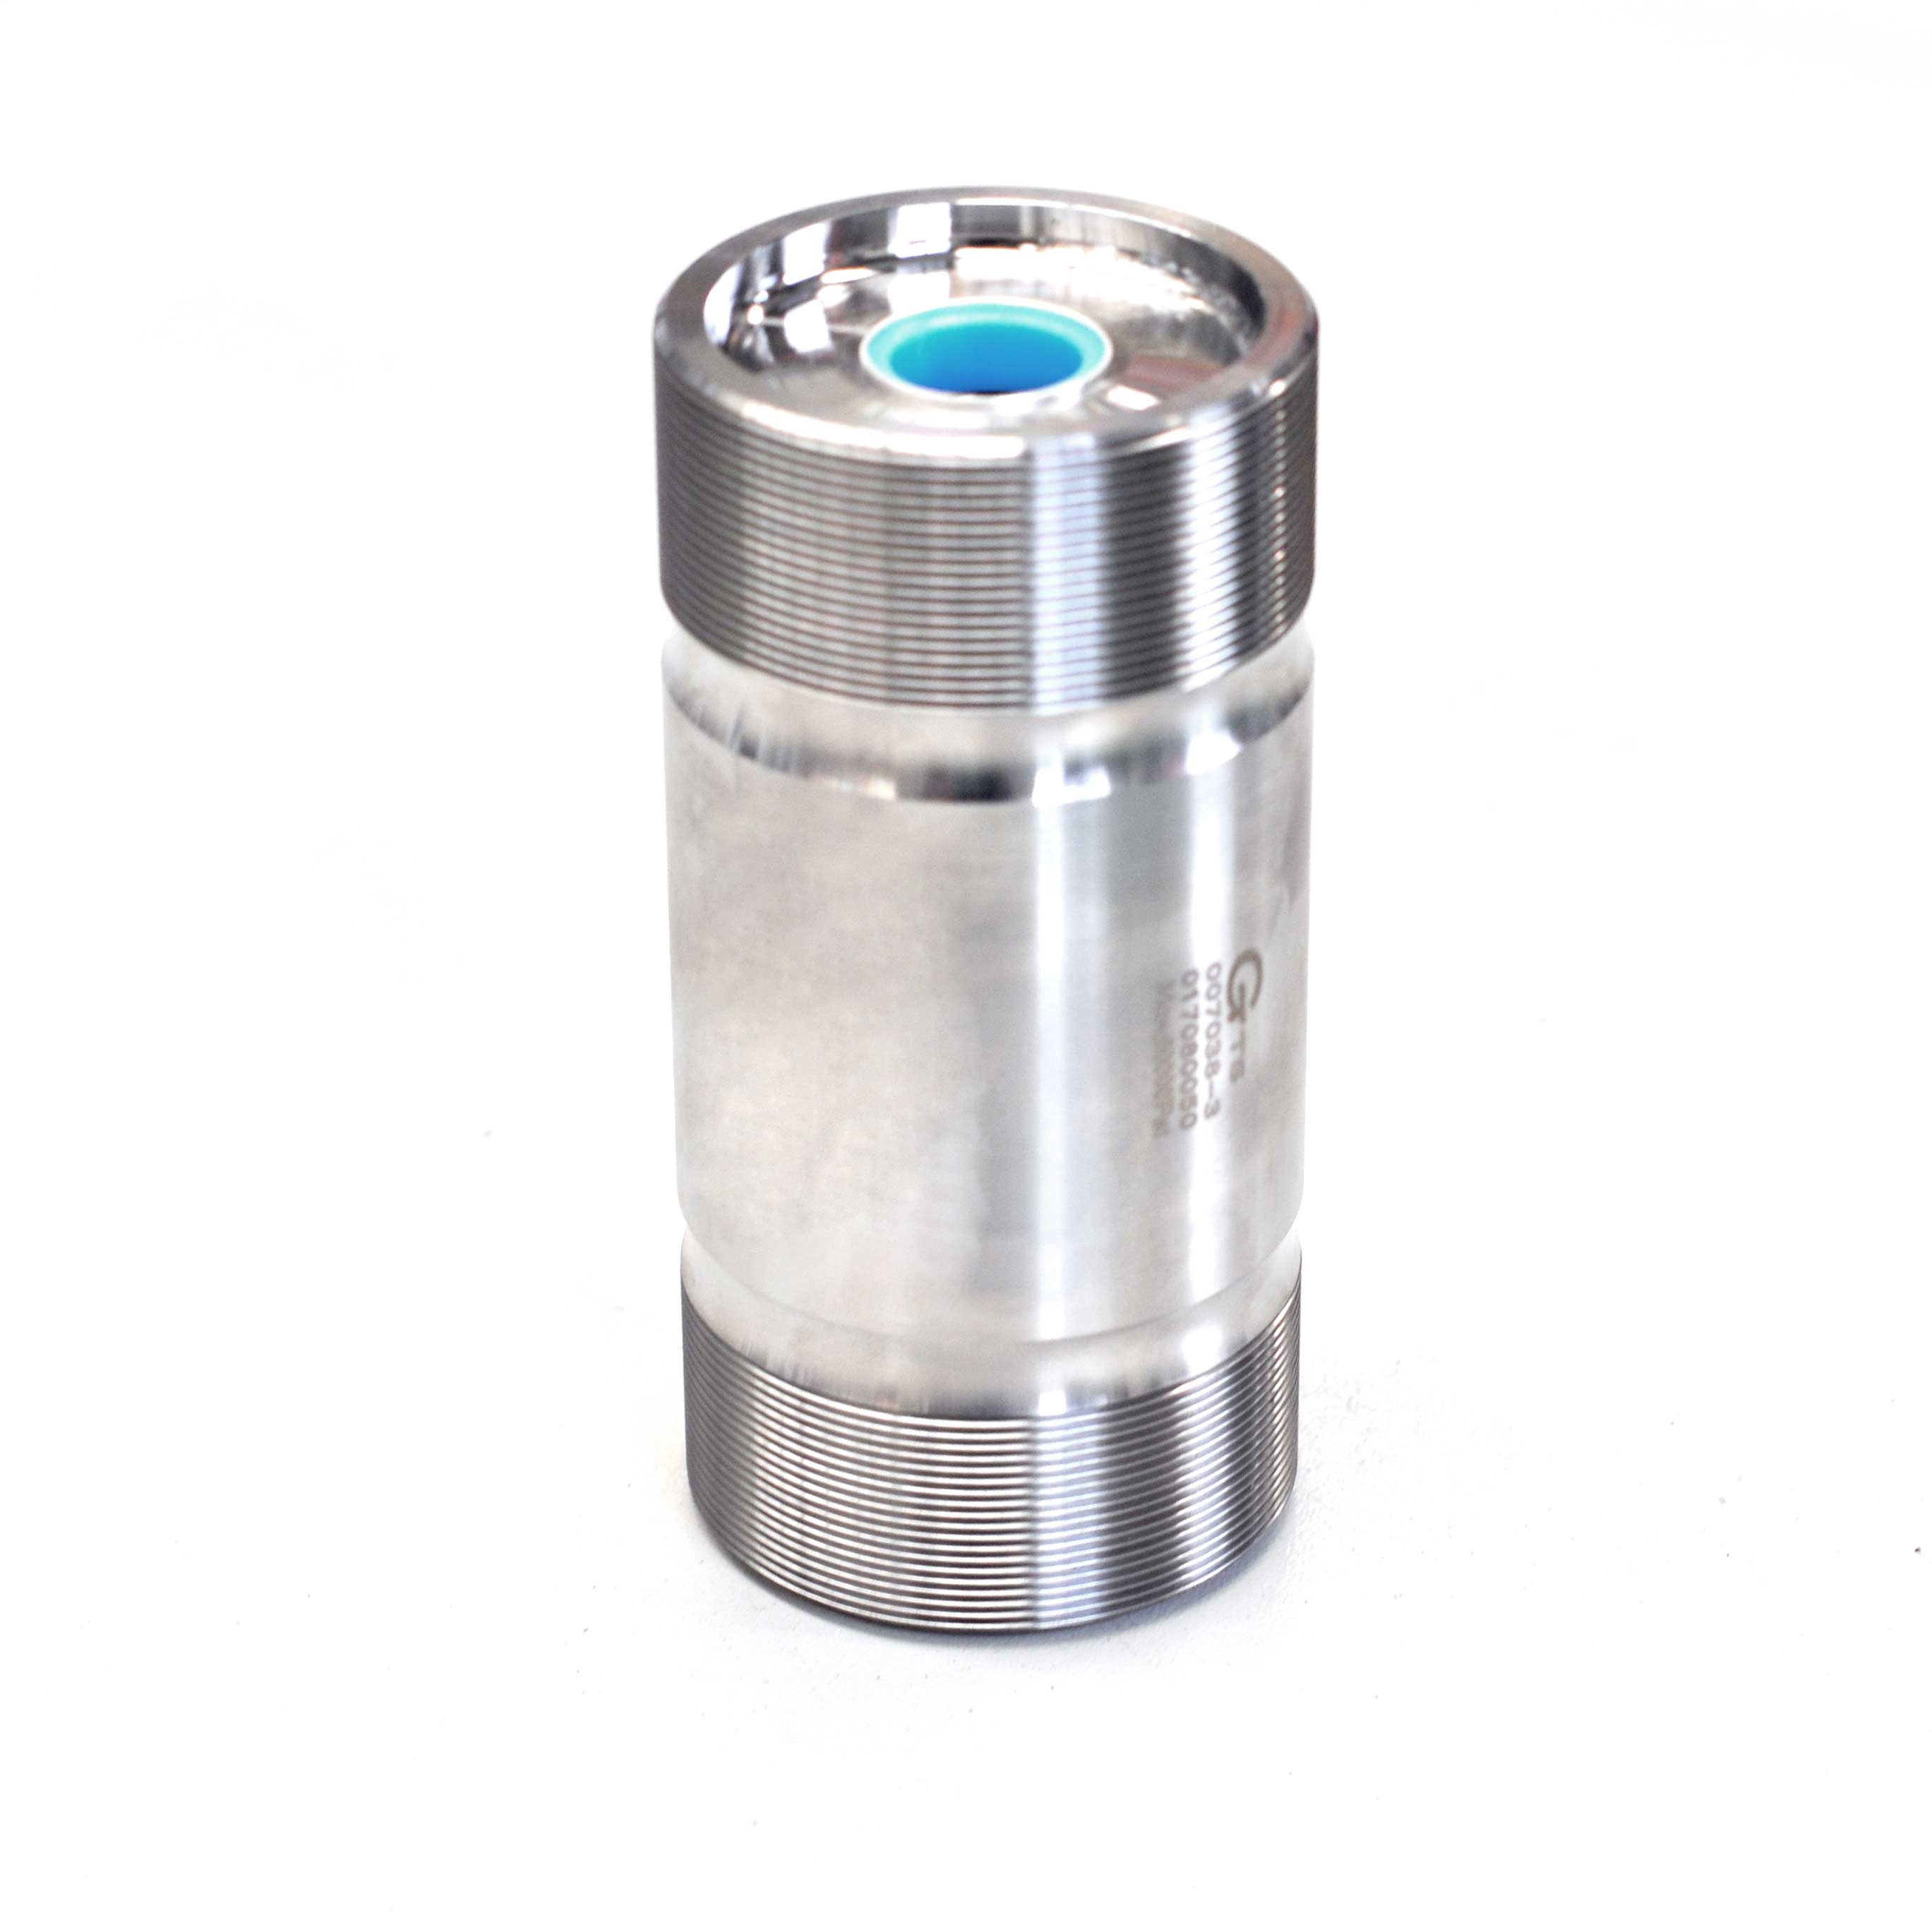 WaterJet 60k High Pressure Cylinder For Waterjet Intensifier